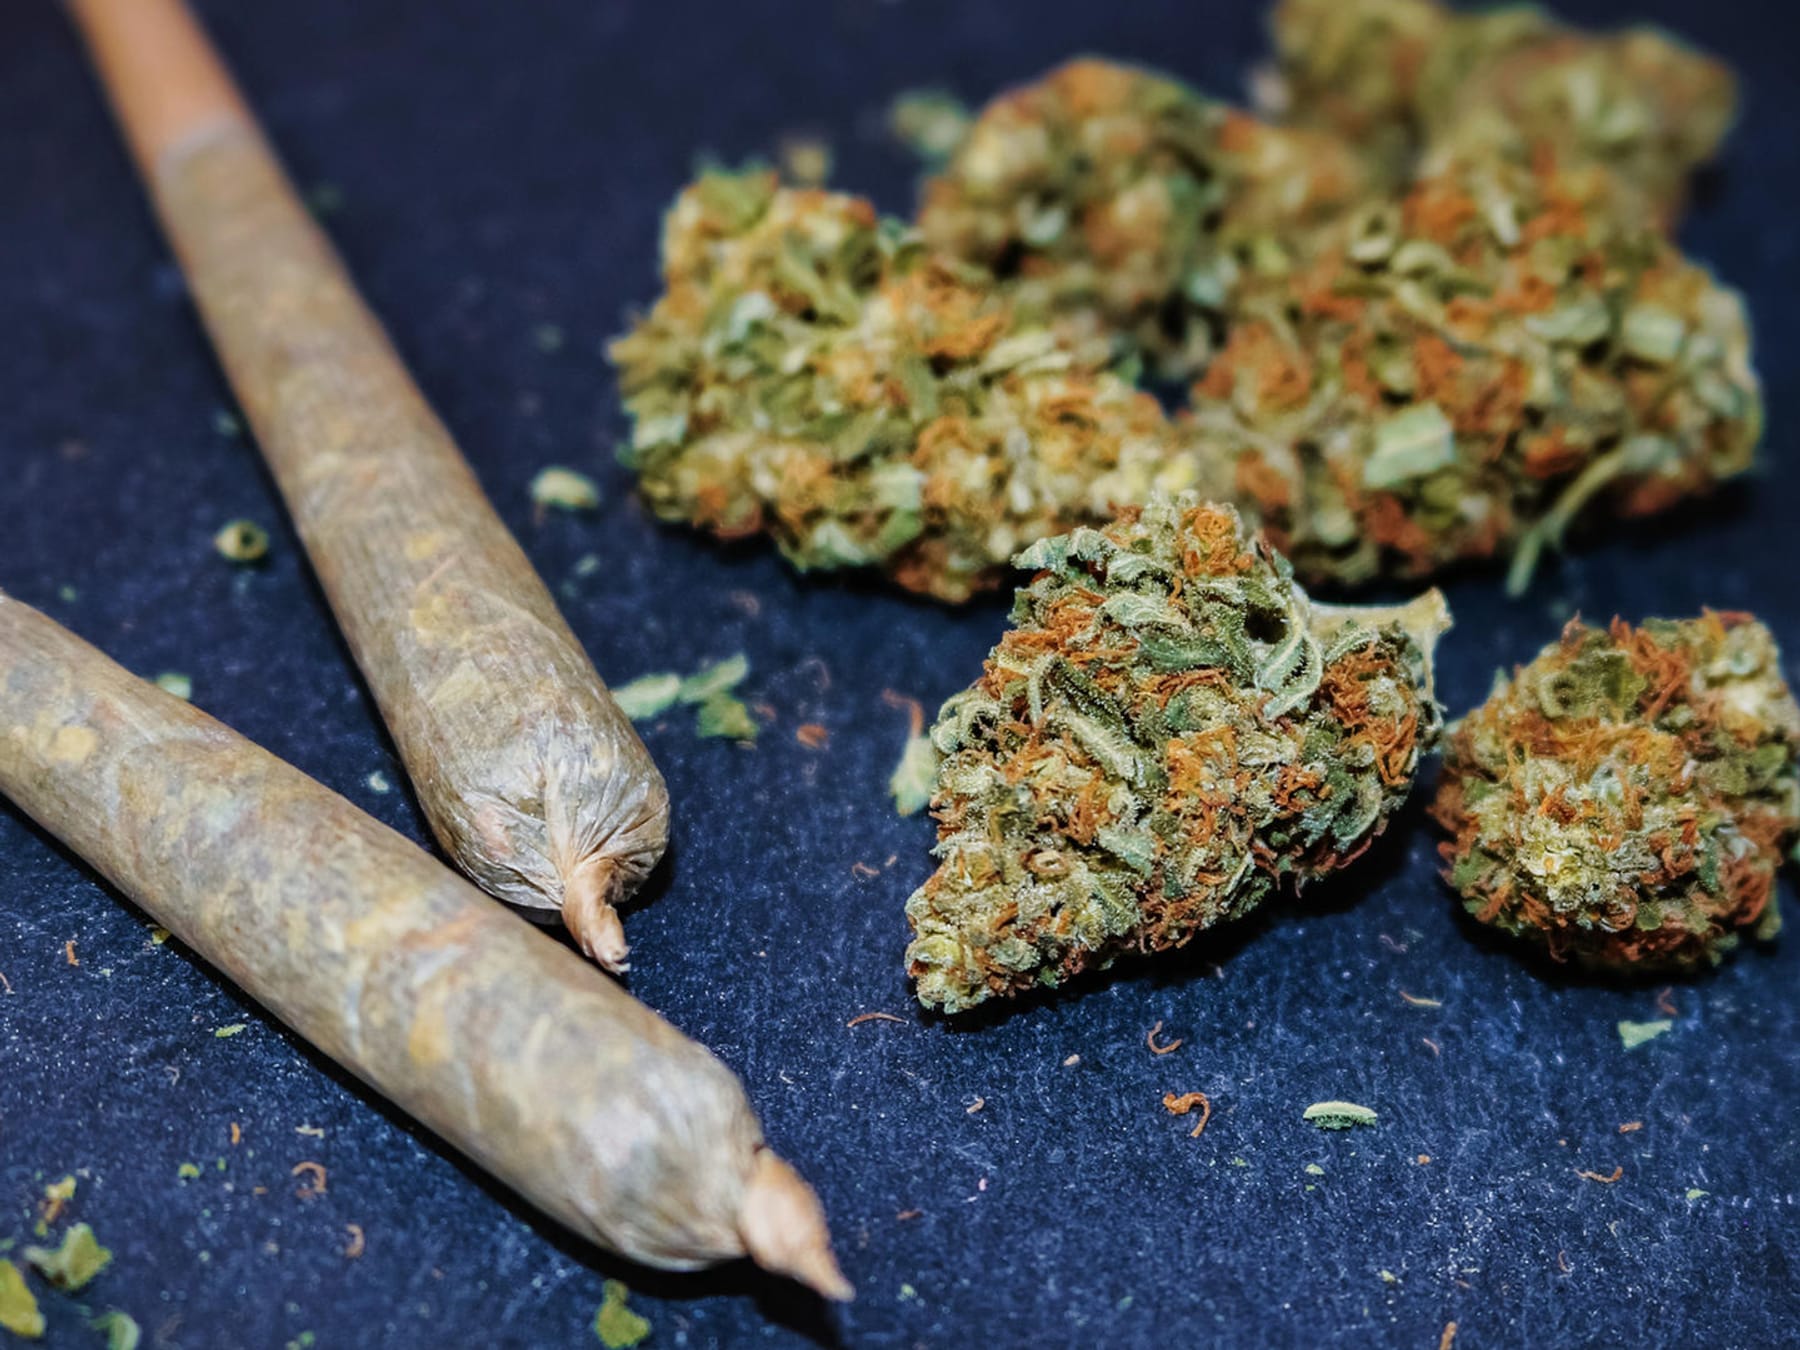 Cannabis-Legalisierung: Risiken und Wirkungen der illegalen Droge